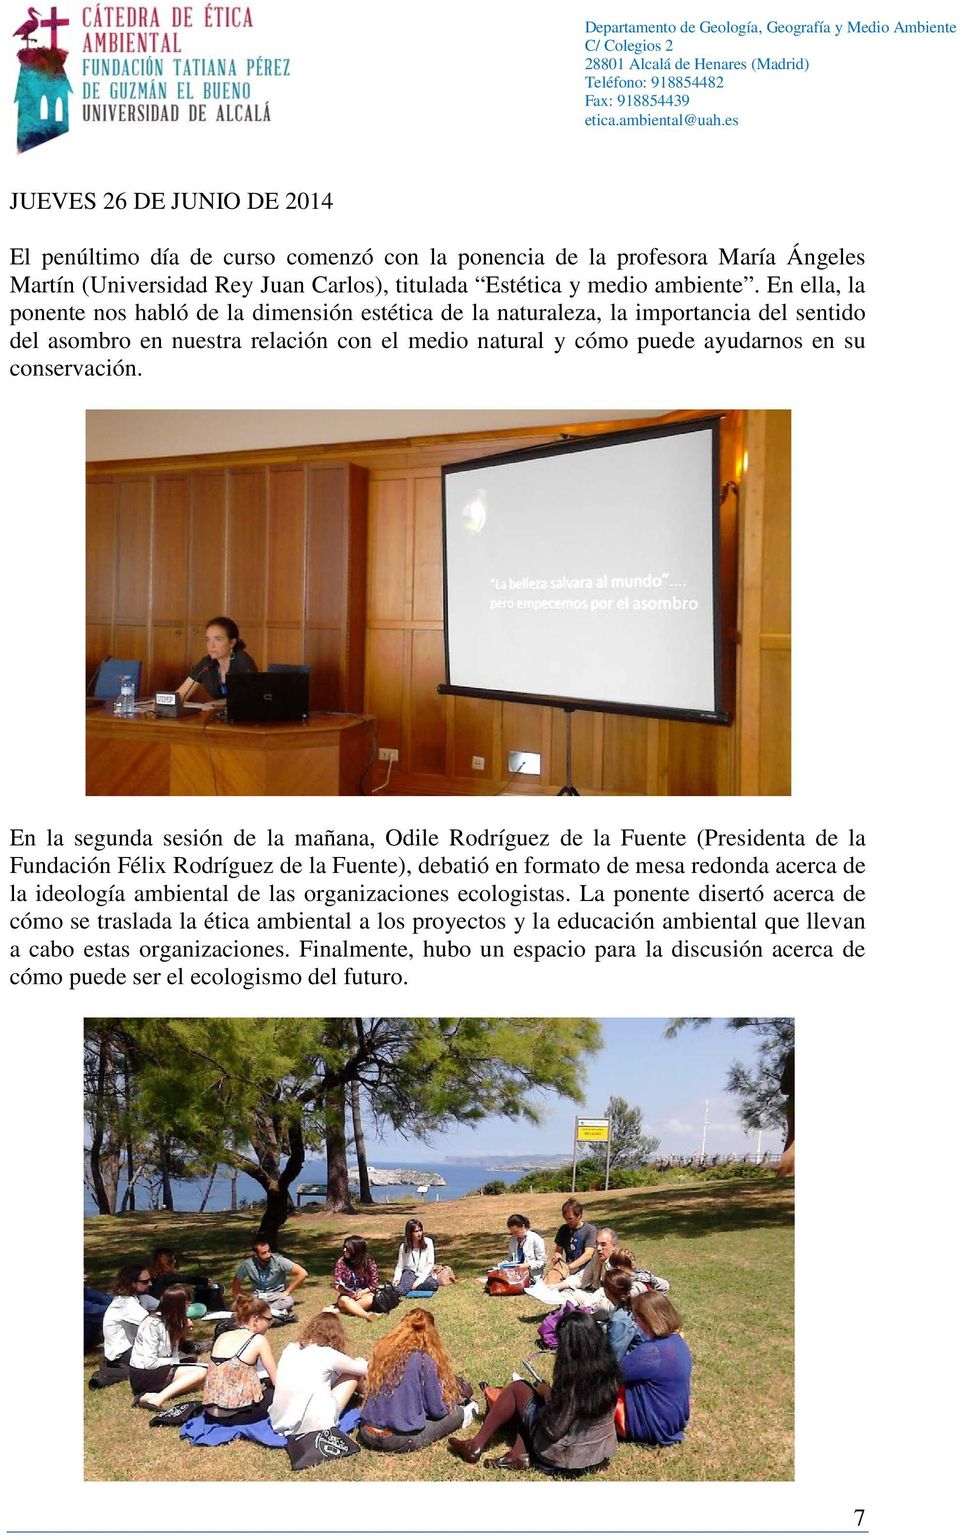 En la segunda sesión de la mañana, Odile Rodríguez de la Fuente (Presidenta de la Fundación Félix Rodríguez de la Fuente), debatió en formato de mesa redonda acerca de la ideología ambiental de las